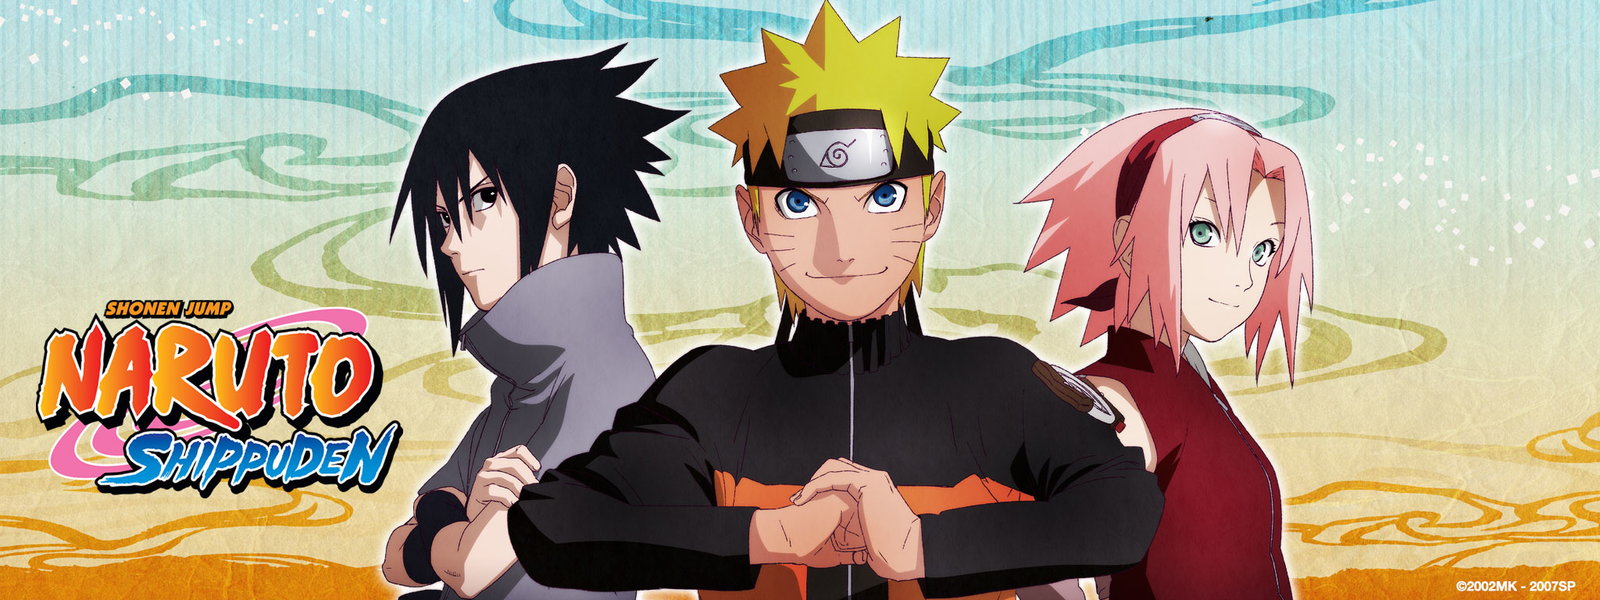 Naruto episodes download free